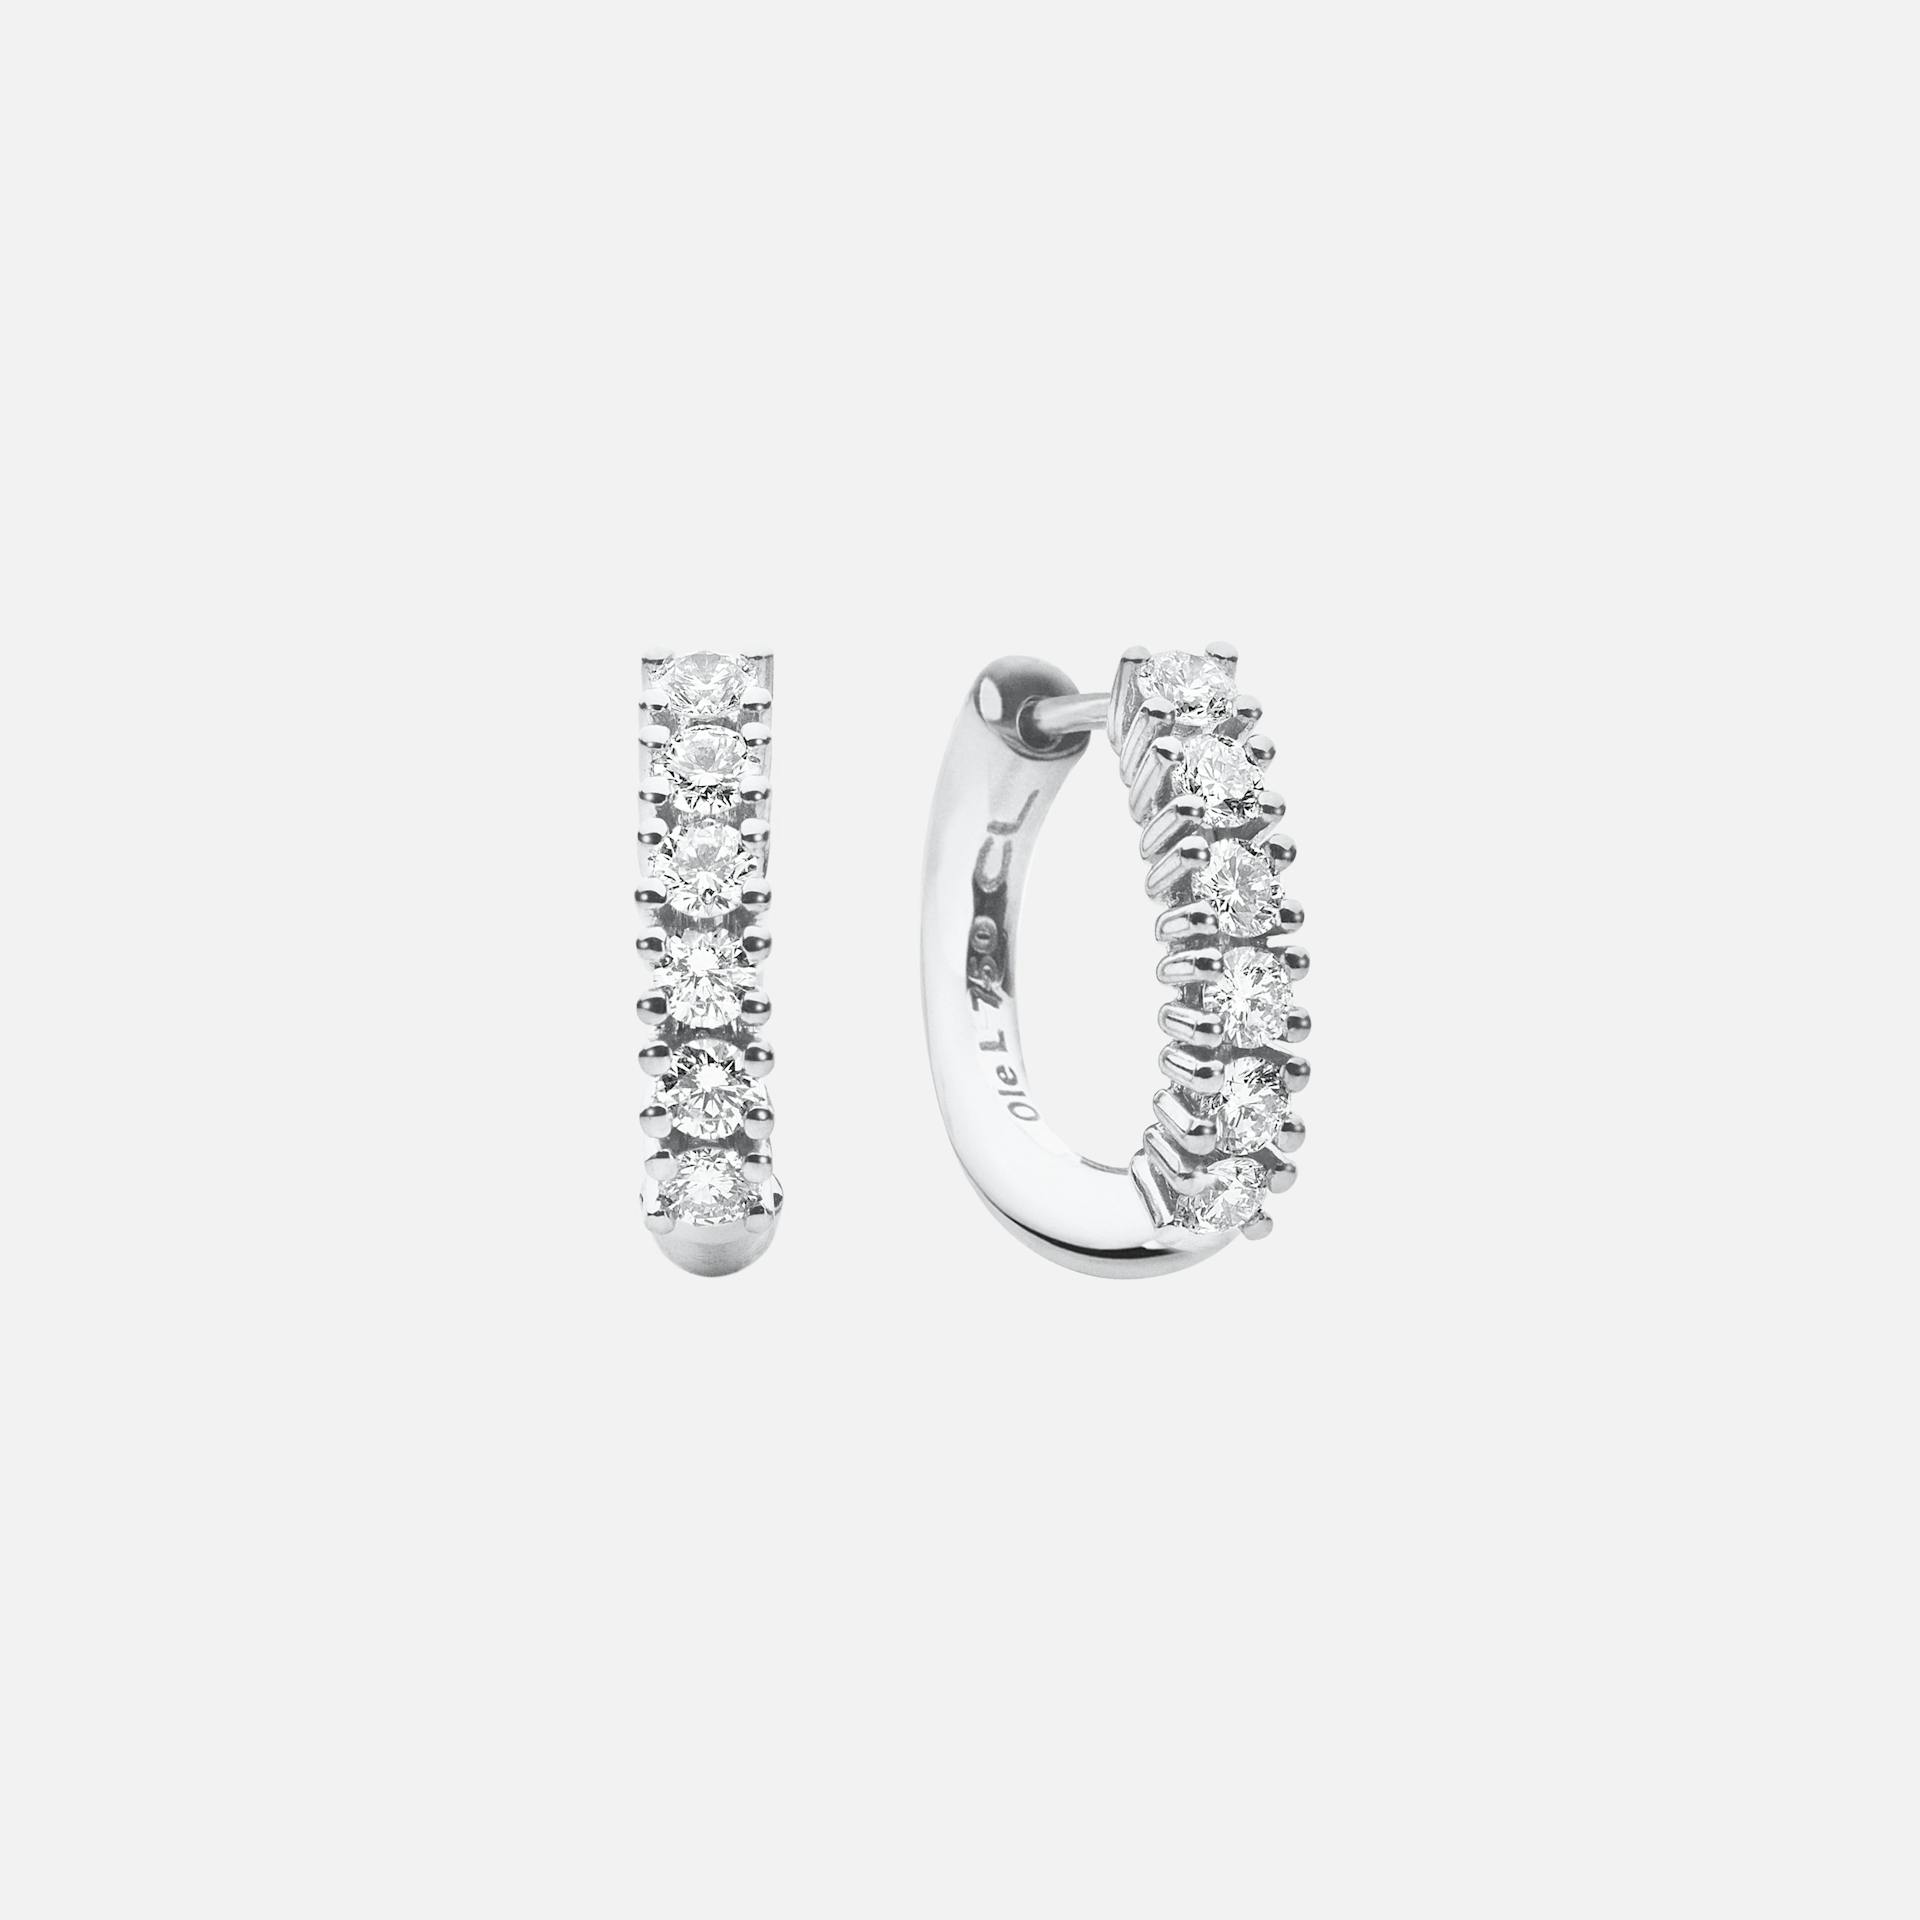 Celebration Creol Earrings in White Gold with Diamonds  |  Ole Lynggaard Copenhagen